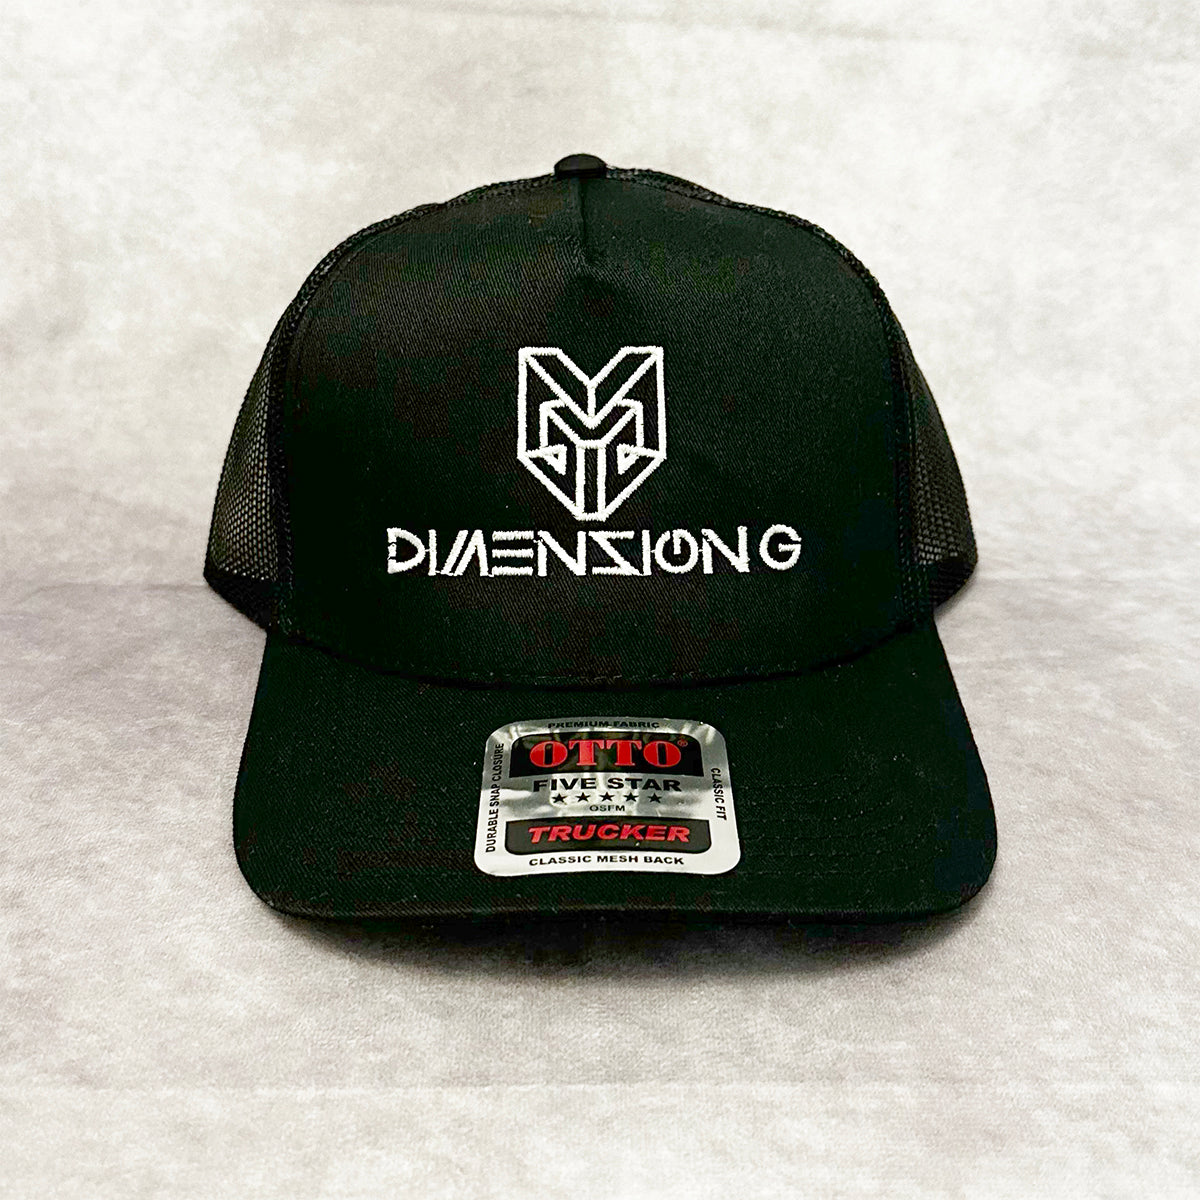 Dimension G Trucker Hat